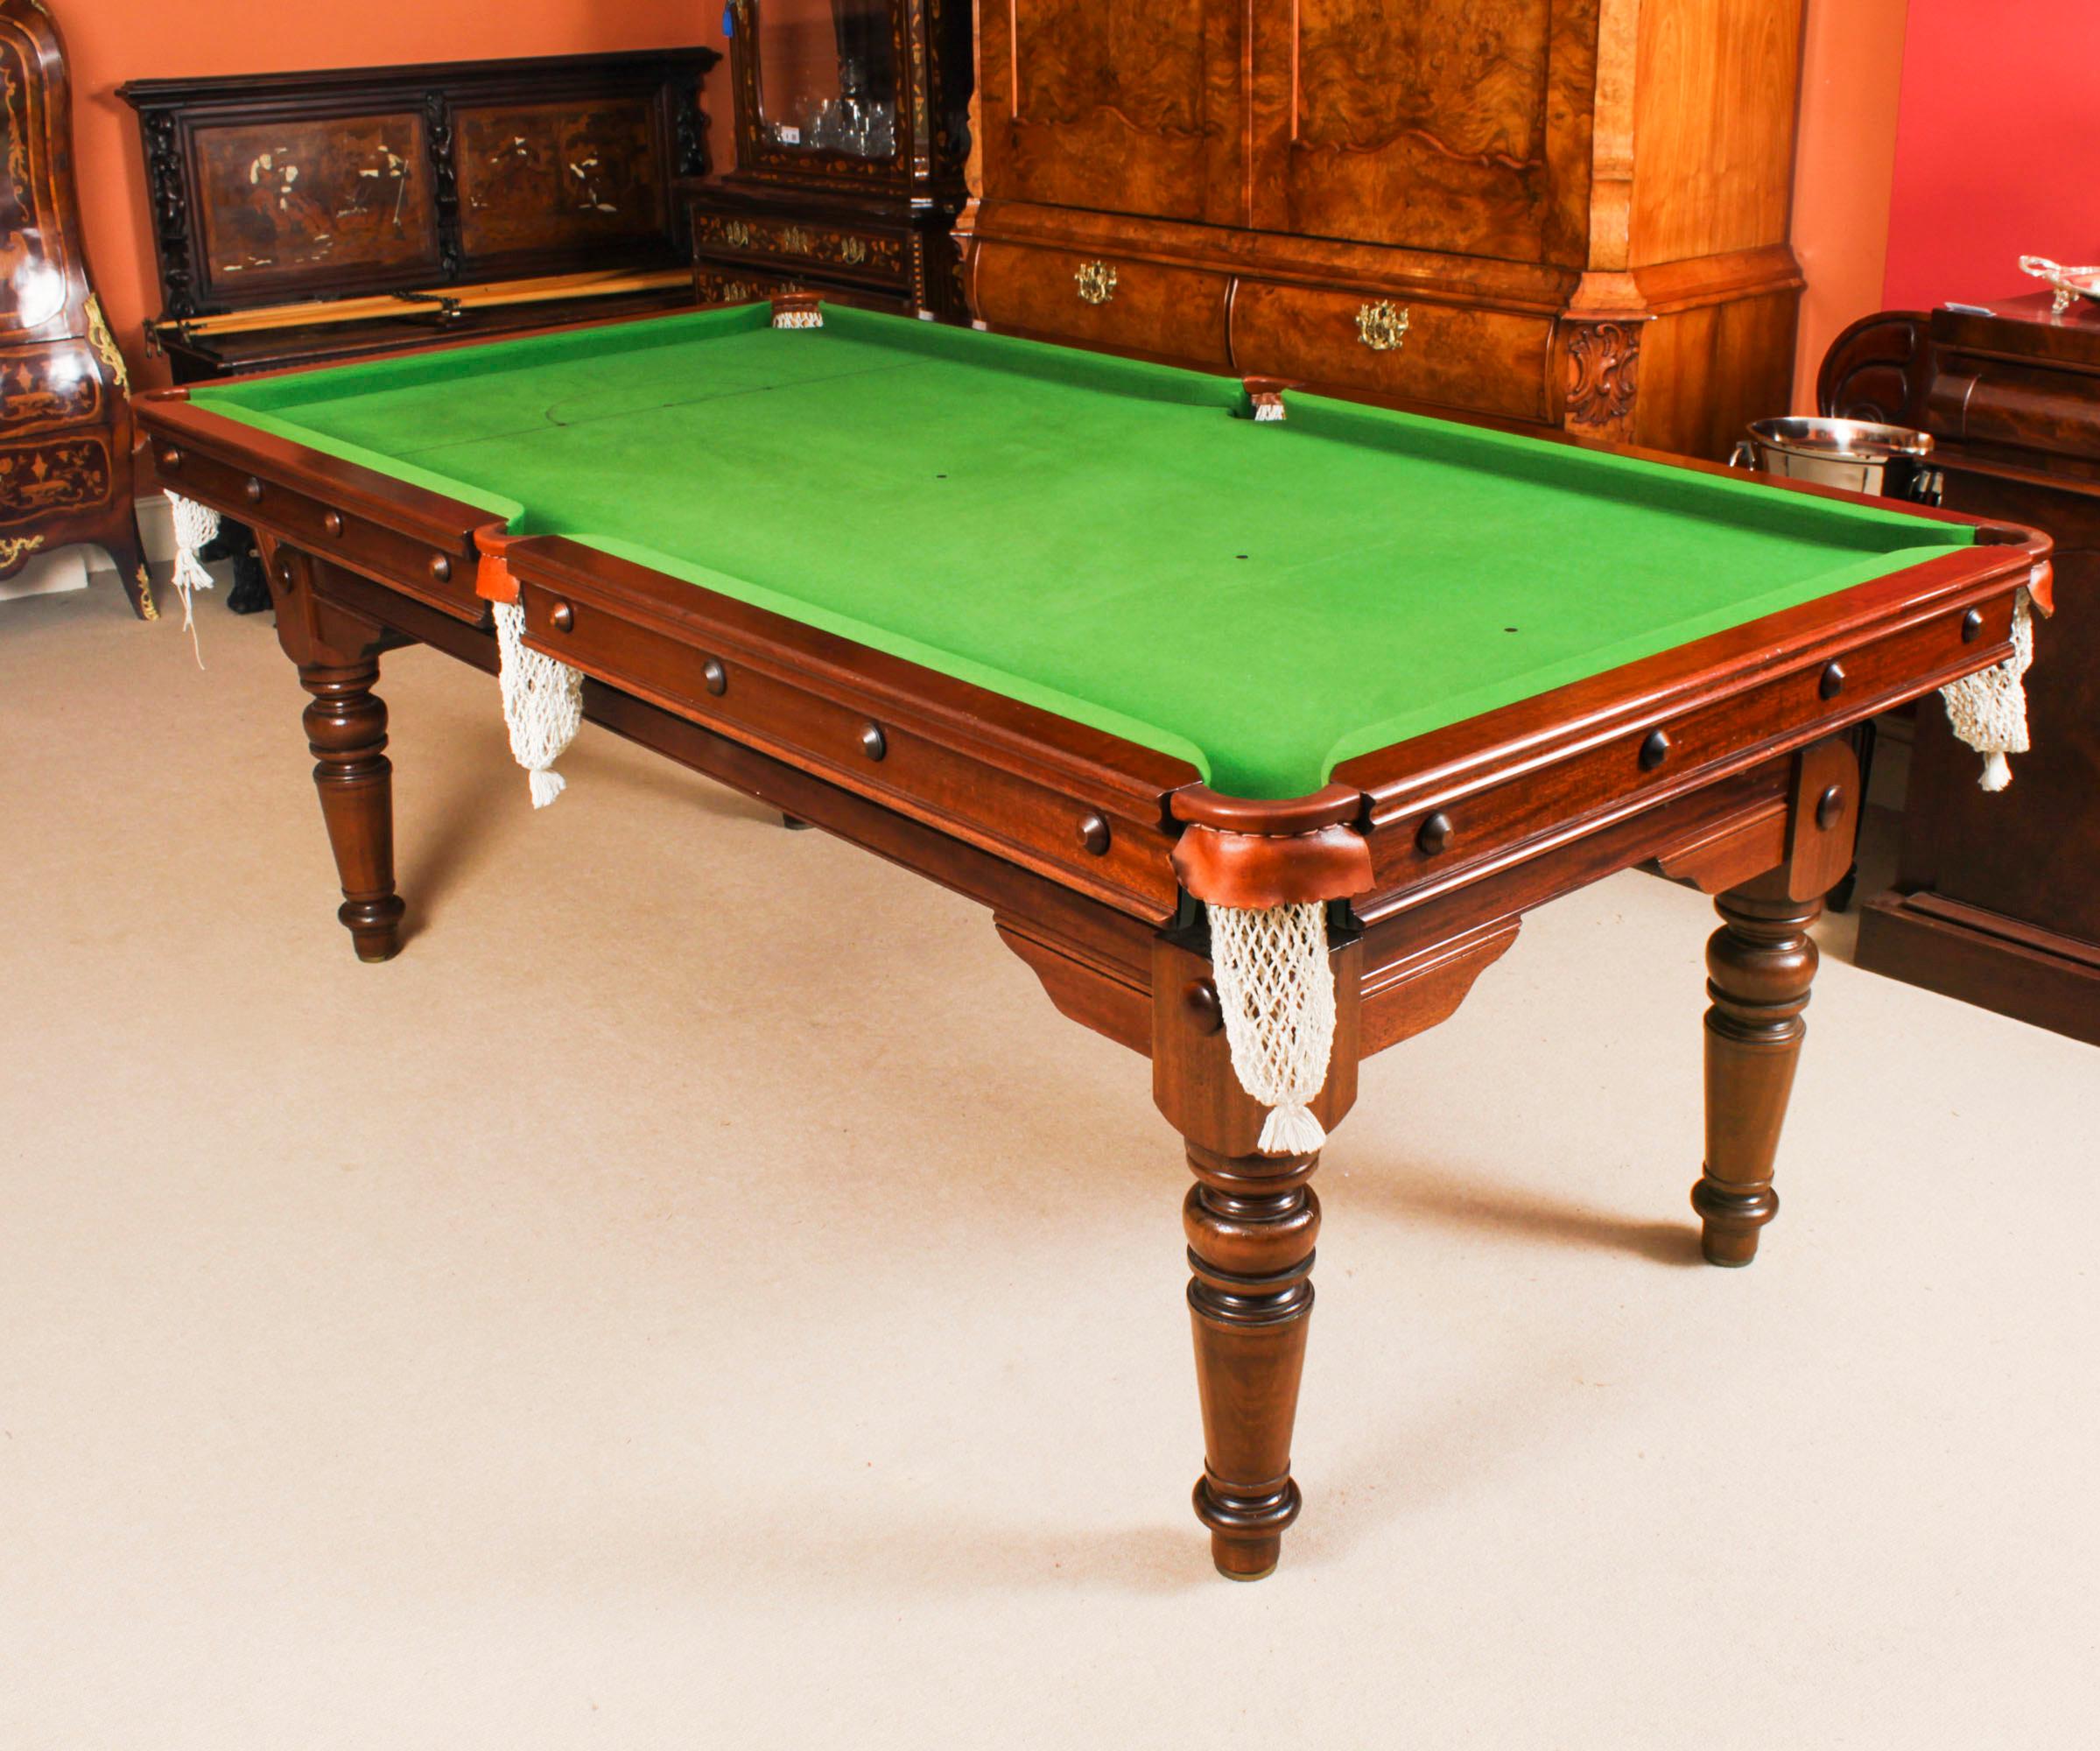 Eine hervorragende antike Edwardian metamorphic  Snooker-Billardtisch /Esstisch von E.J.Riley CIRCA 1900, restauriert von den bekannten Billardtischherstellern Hamilton & Tucker.
 
Dieser Tisch ist ein Blickfang in Ihrem Wohnzimmer, bietet bequem